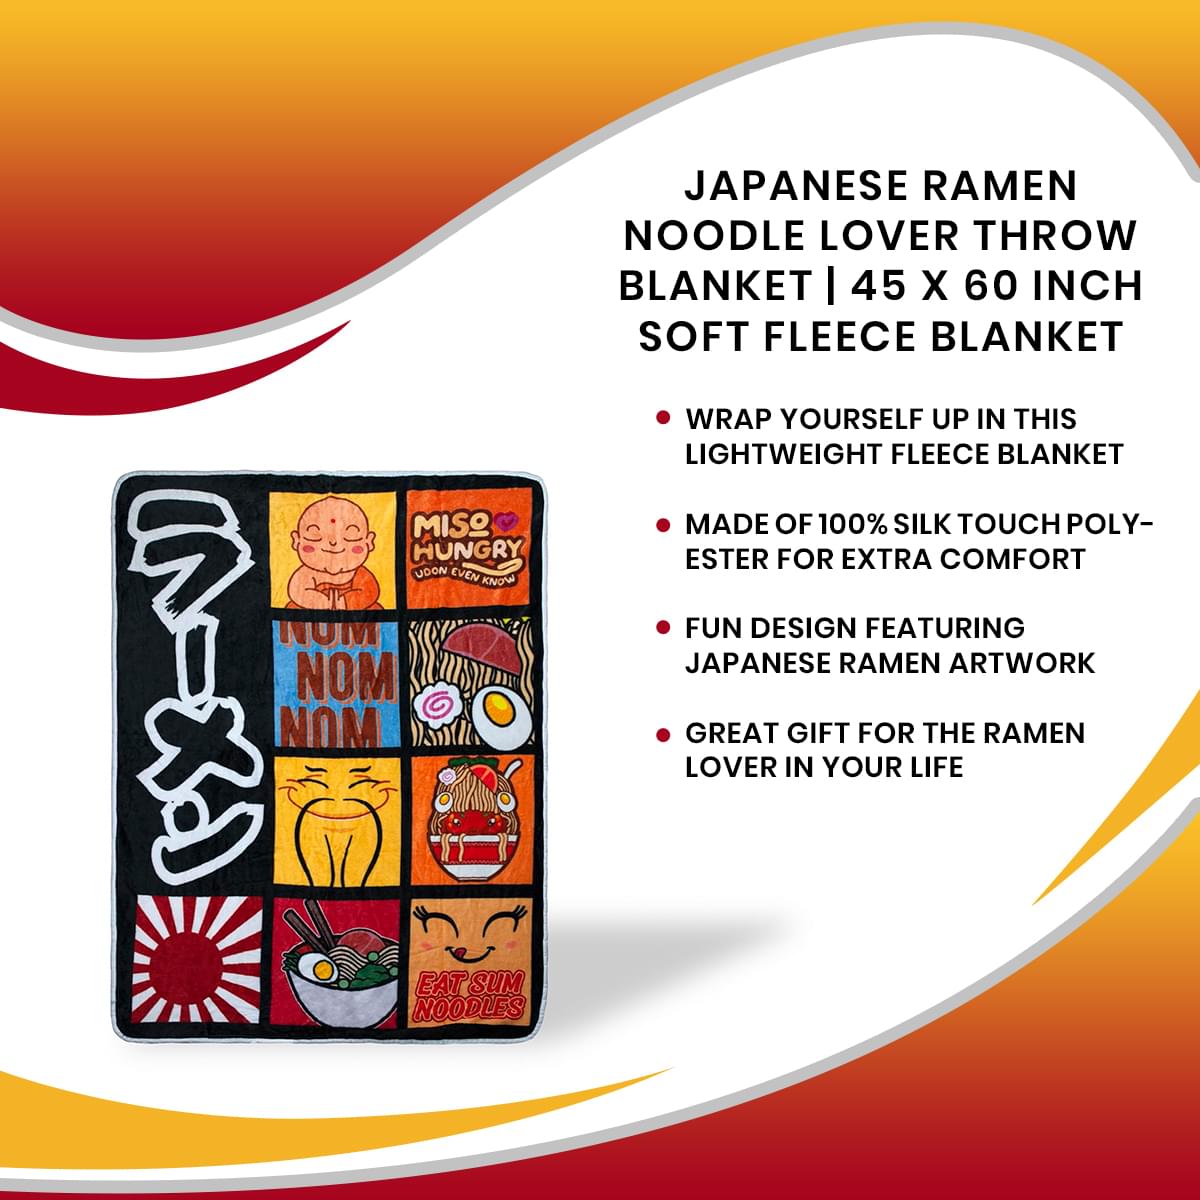 Ramen Noodle Lover Throw Blanket | 45 x 60 Inch Soft Fleece Blanket